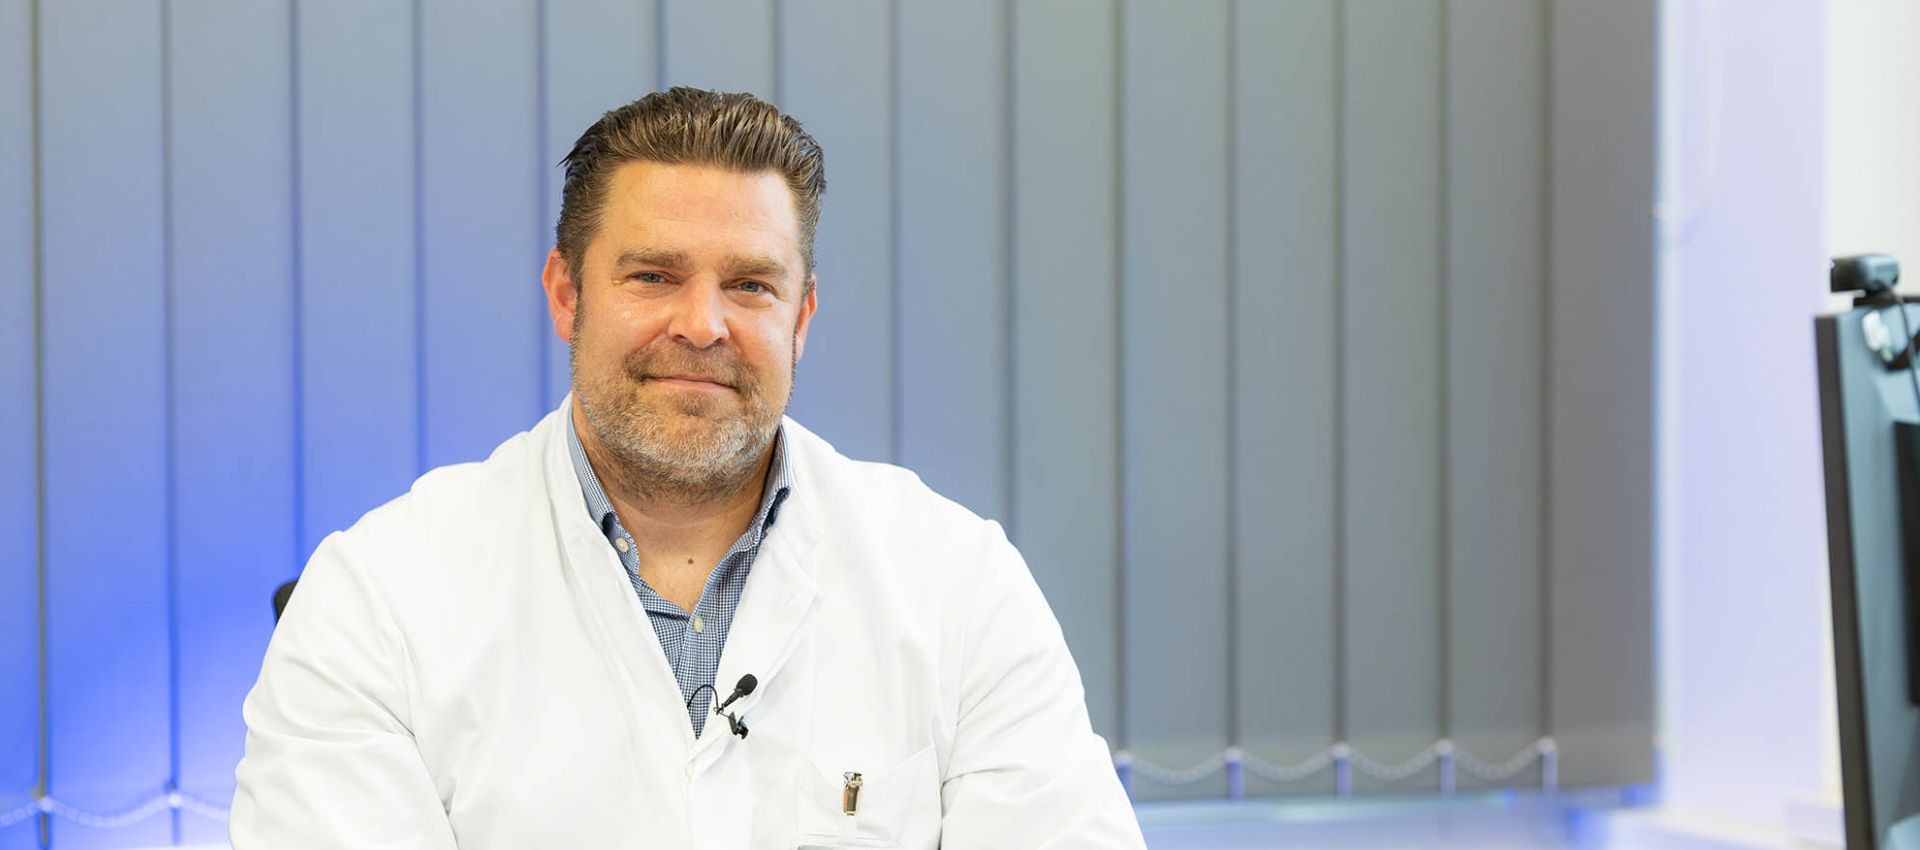 Allgemeinchirurgie - Chefarzt Prof. Dr. Daniel Vallböhmer am Schreibtisch